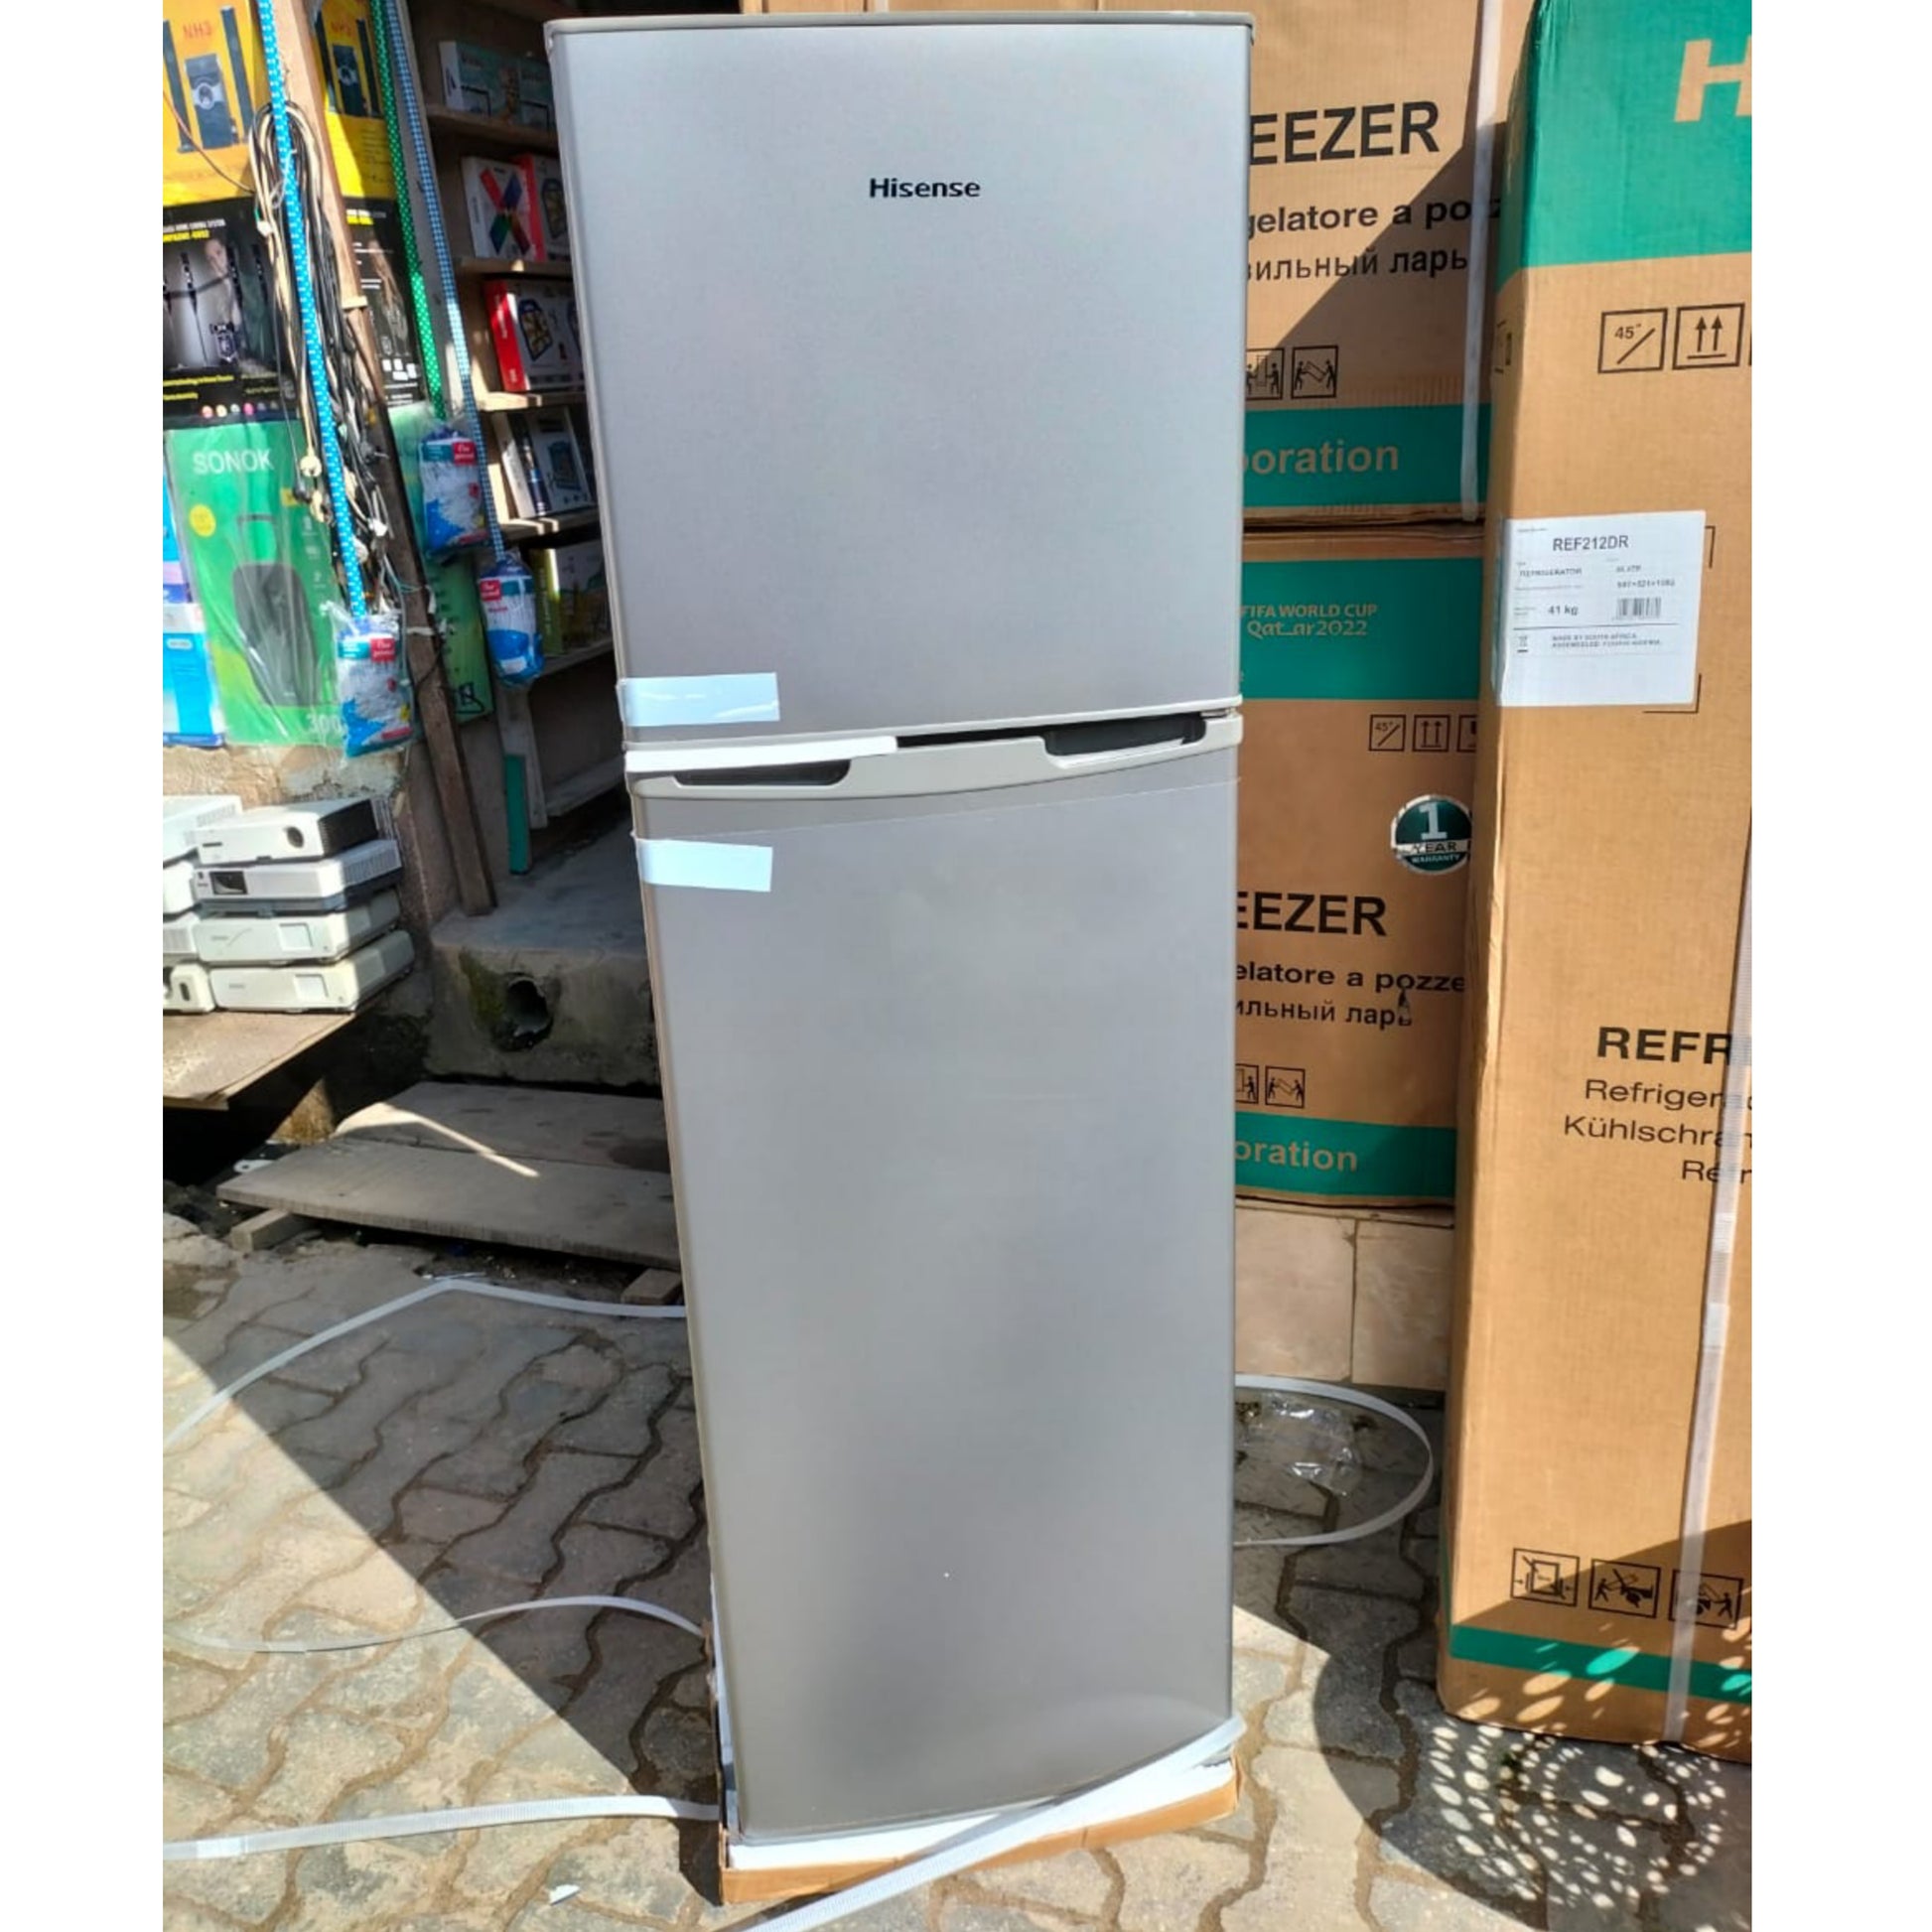 Hisense REF212DR 161L Double Door Top-Freezer Refrigerator (Front View) - Brand New